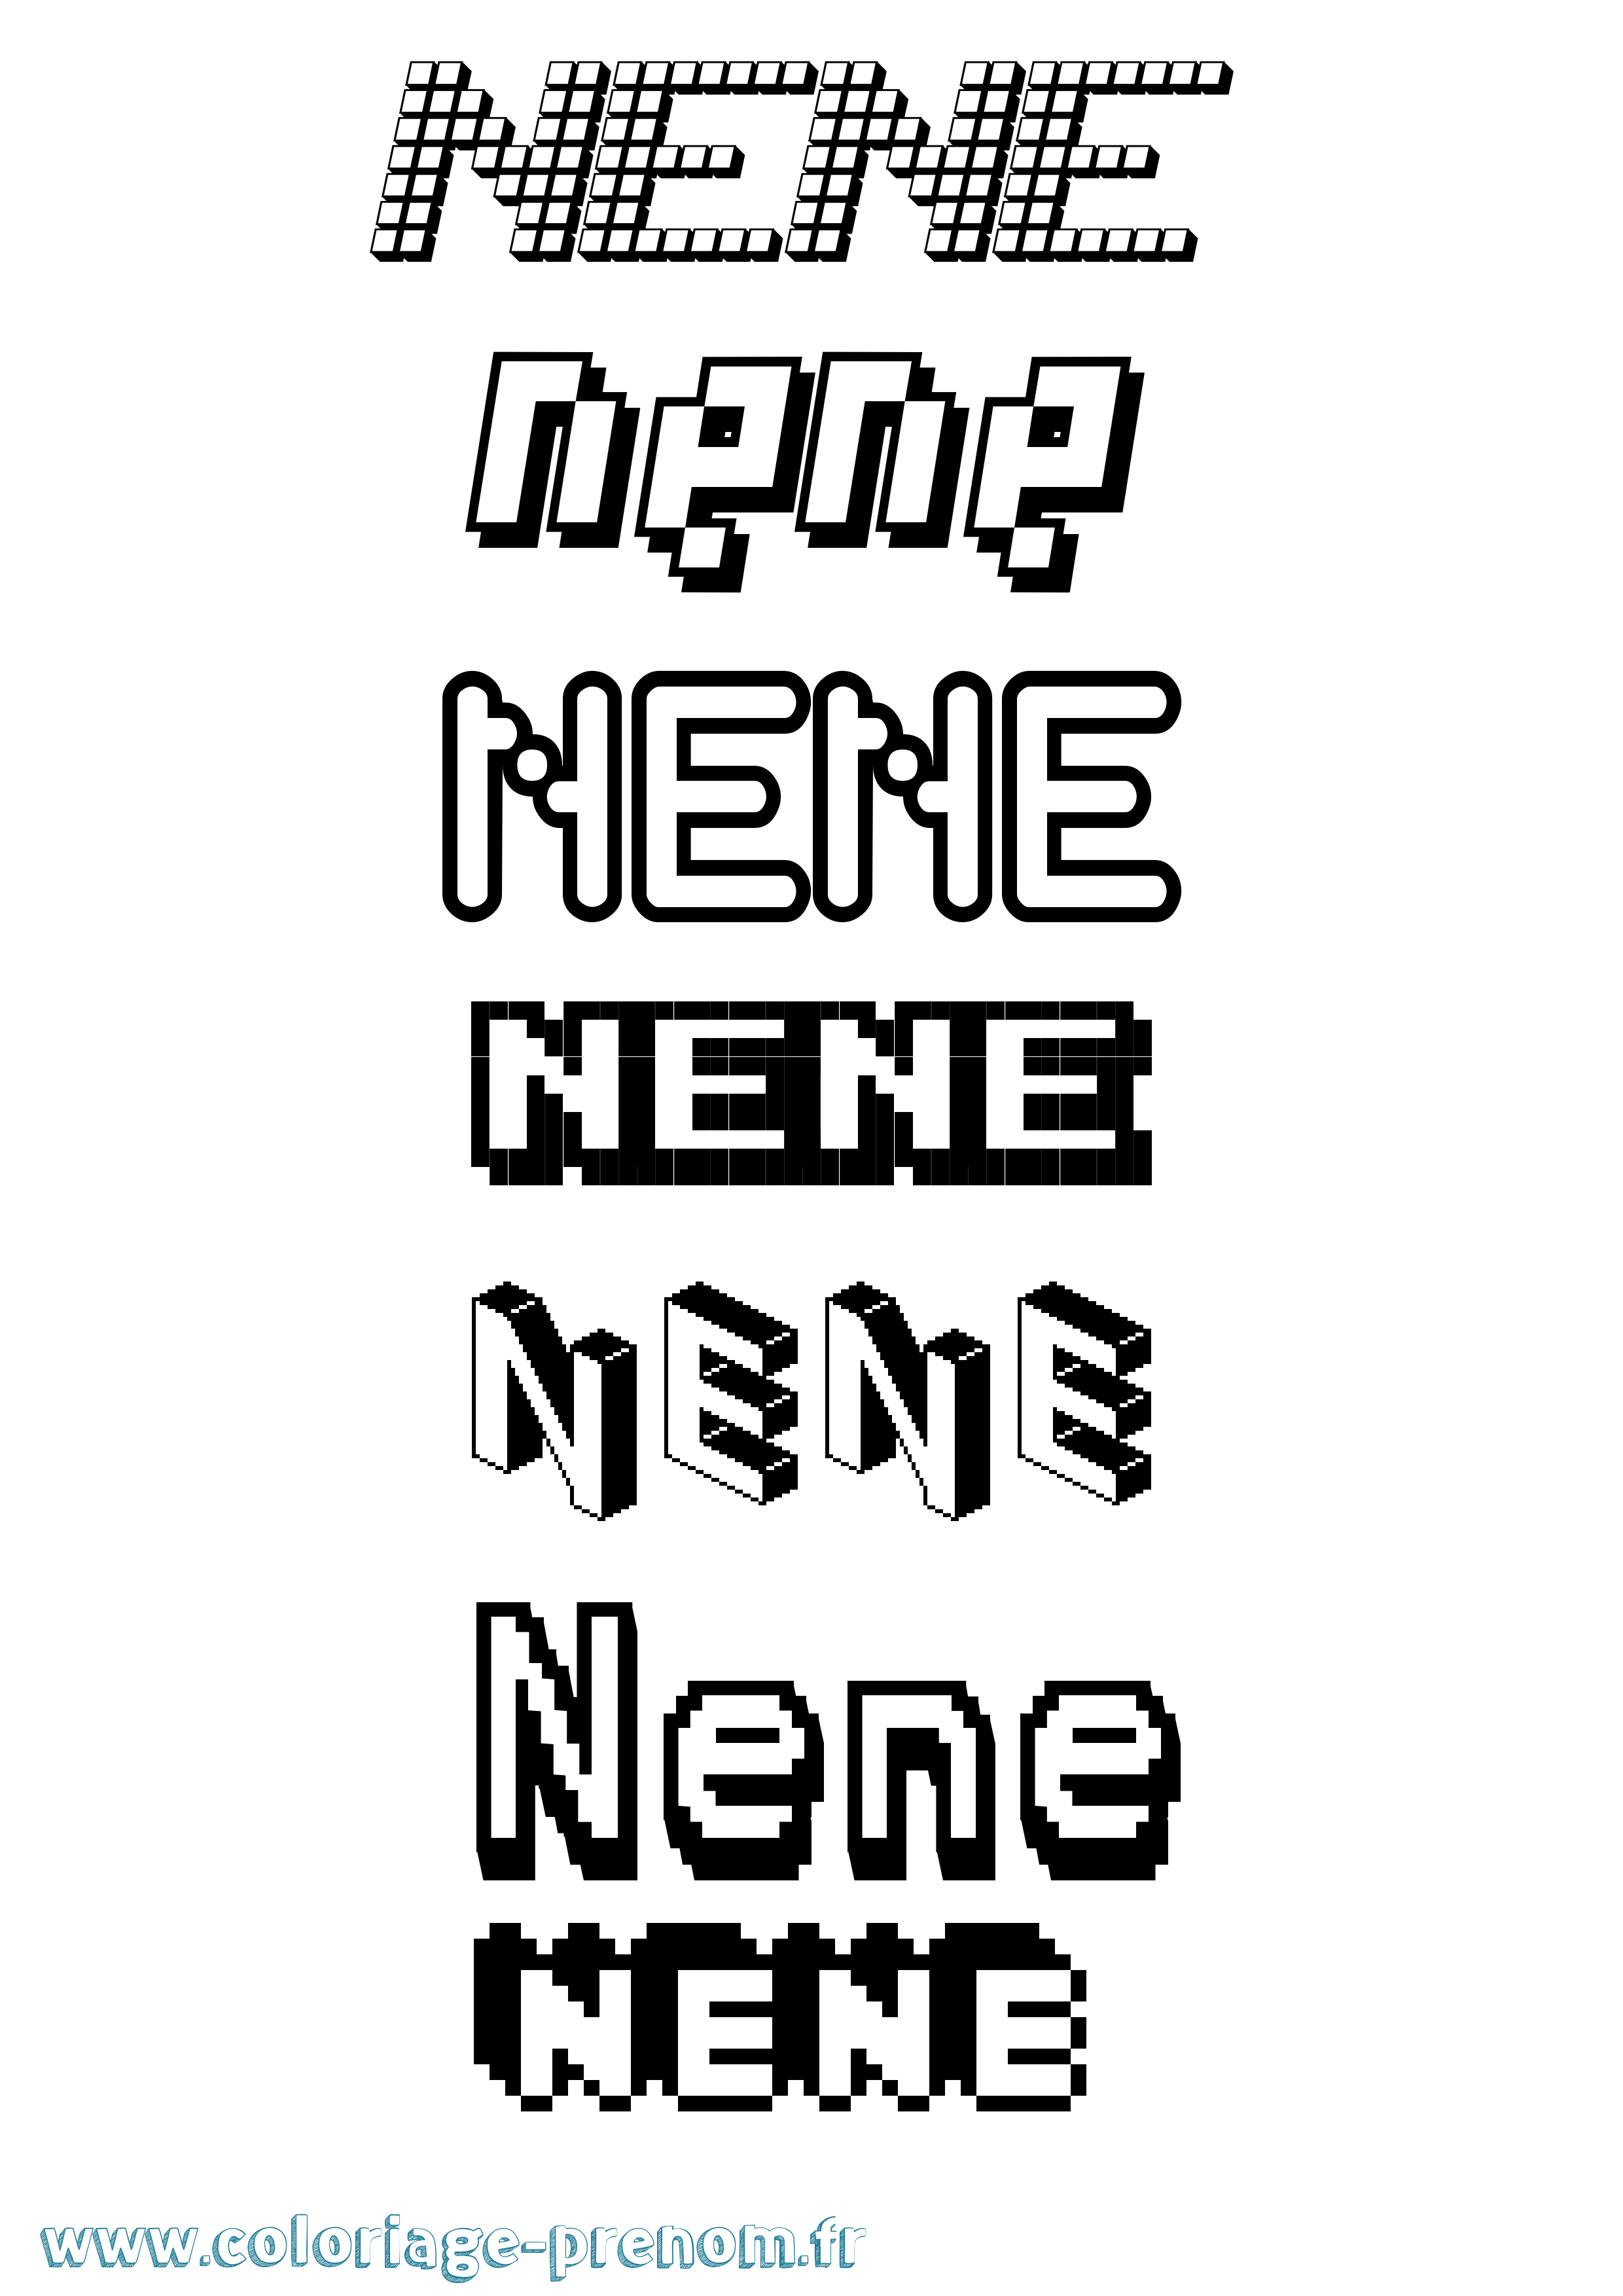 Coloriage prénom Nene Pixel